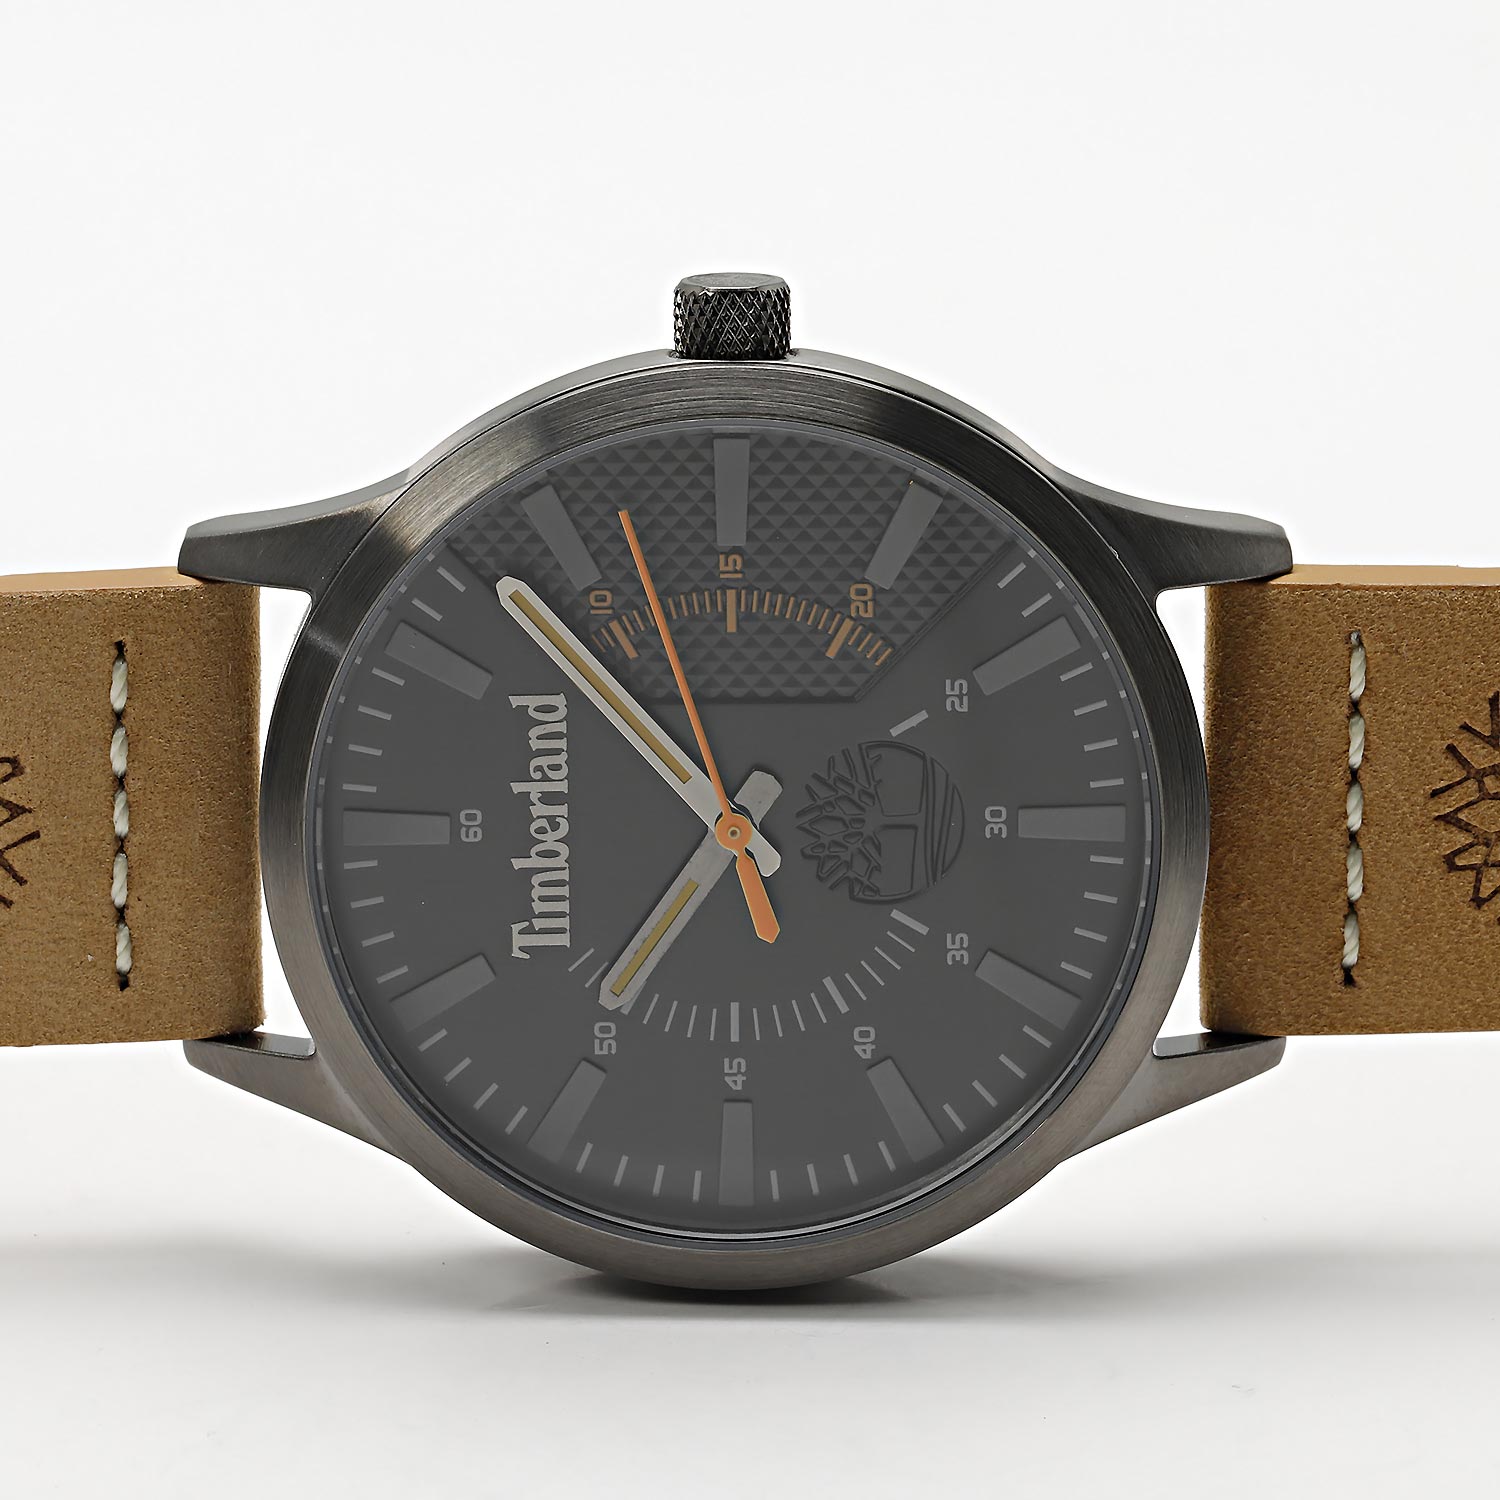 Наручные часы Timberland TDWGA2103601 цене, описание — инструкция, по интернет-магазине купить фото, лучшей характеристики, AllTime.ru в